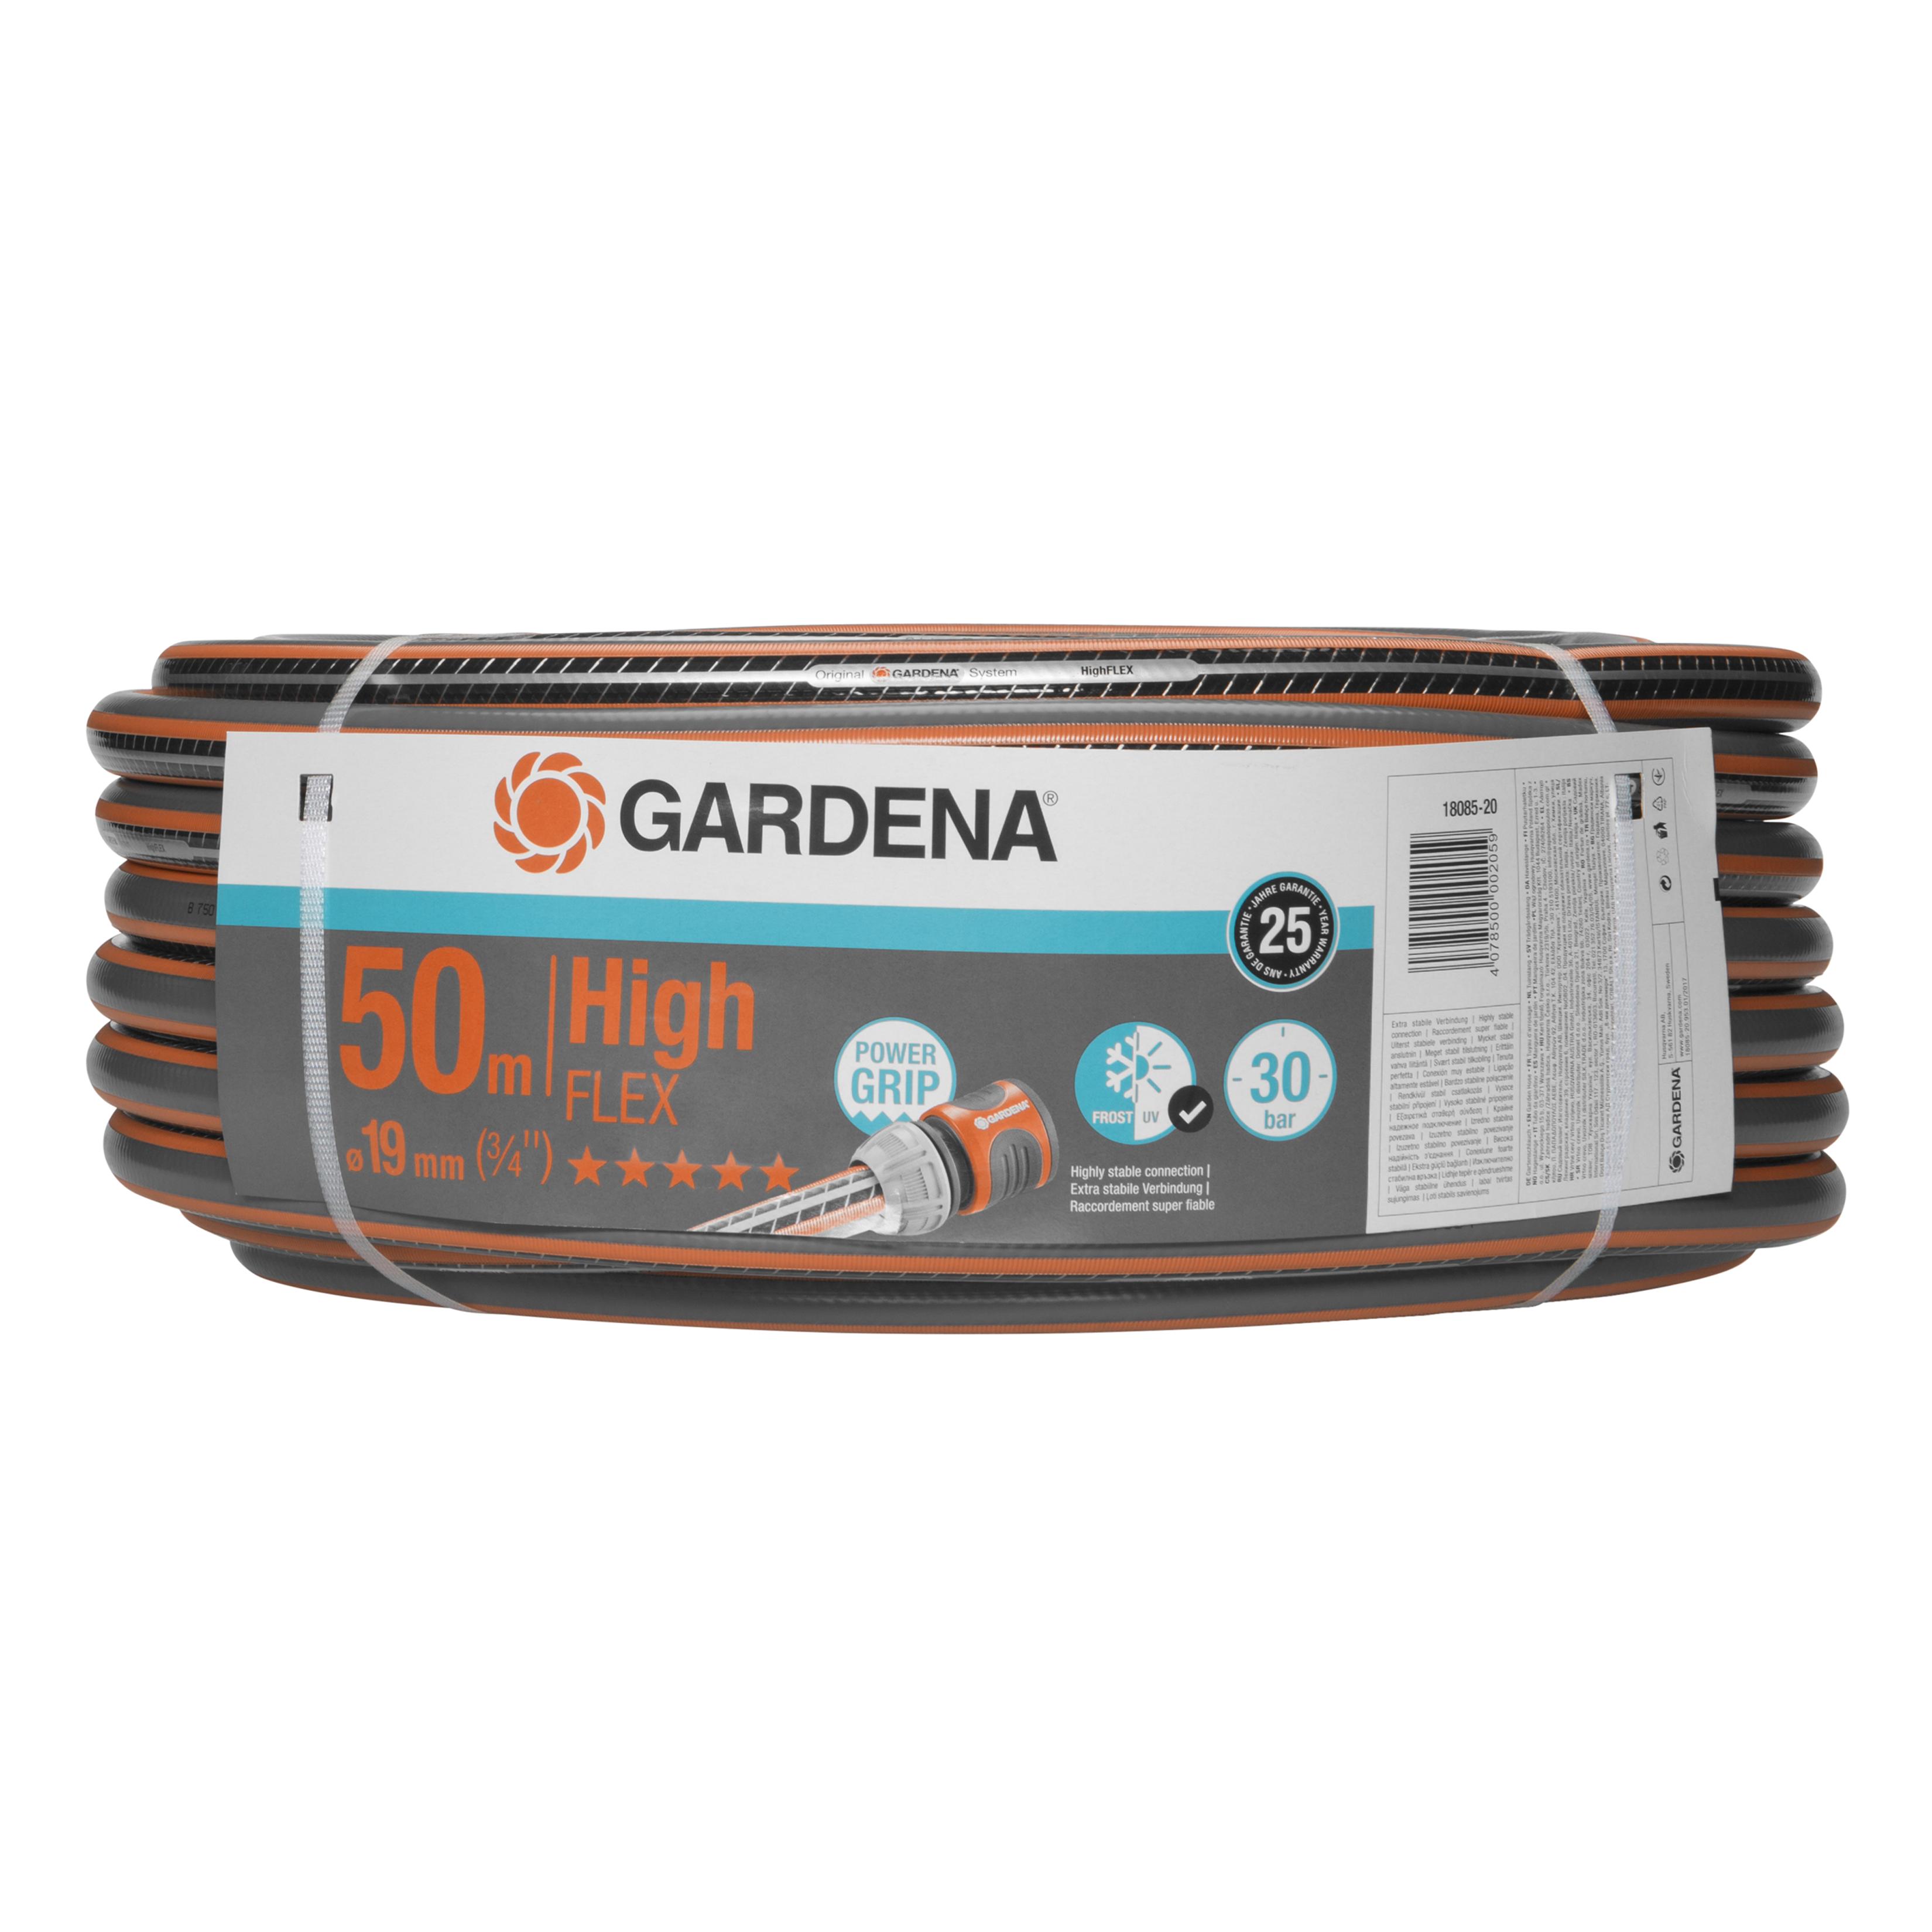 Gardena - Comfort HighFLEX Hose 19 mm 50m